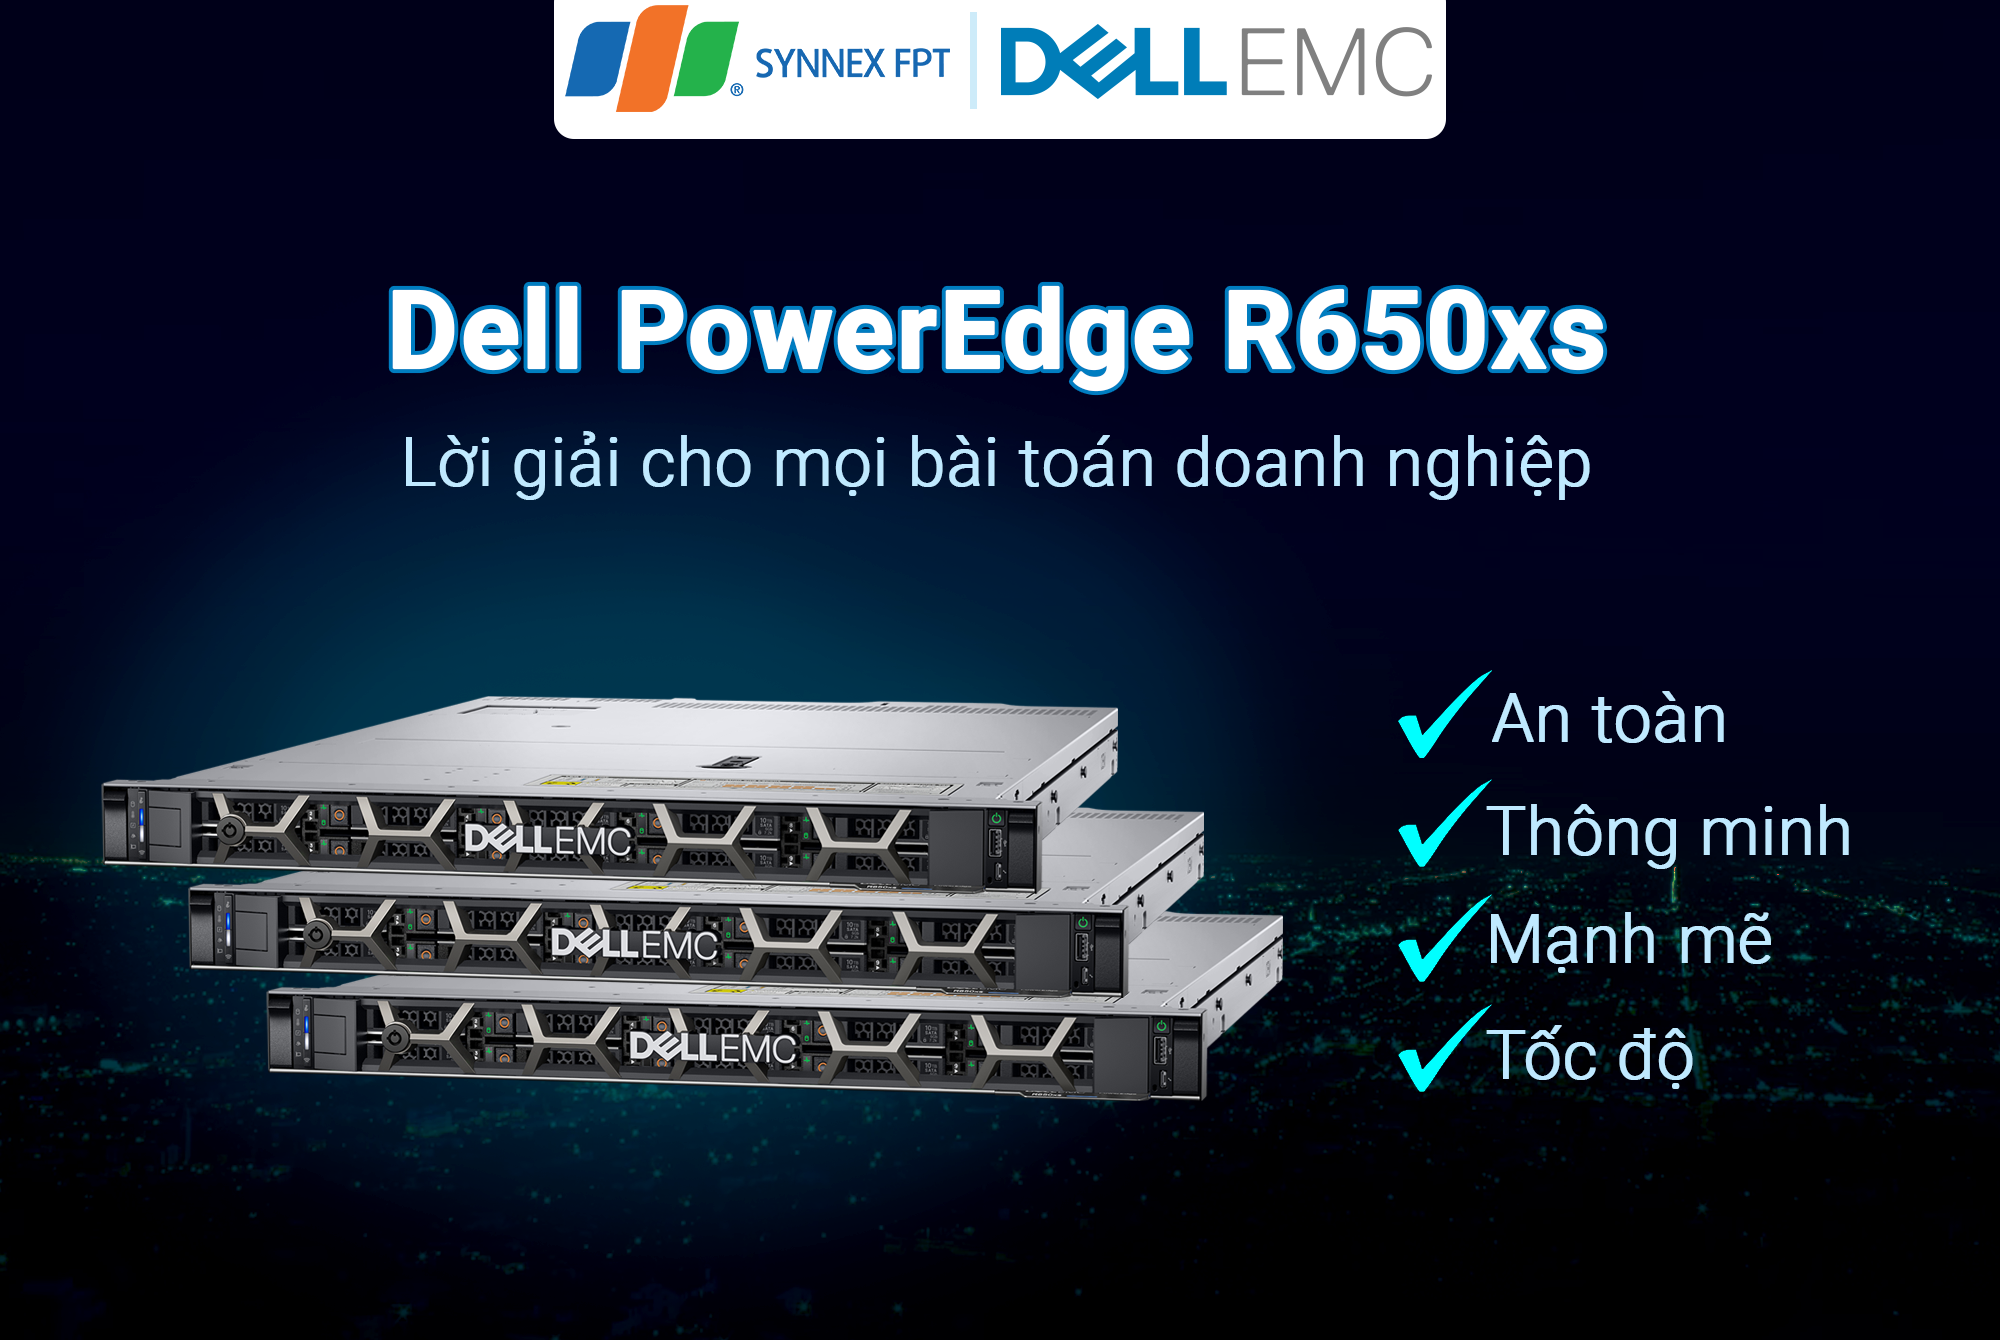 Máy chủ Dell PowerEdge R650xs: Lựa chọn Tốc độ - Bảo mật - Cơ bắp cho doanh nghiệp